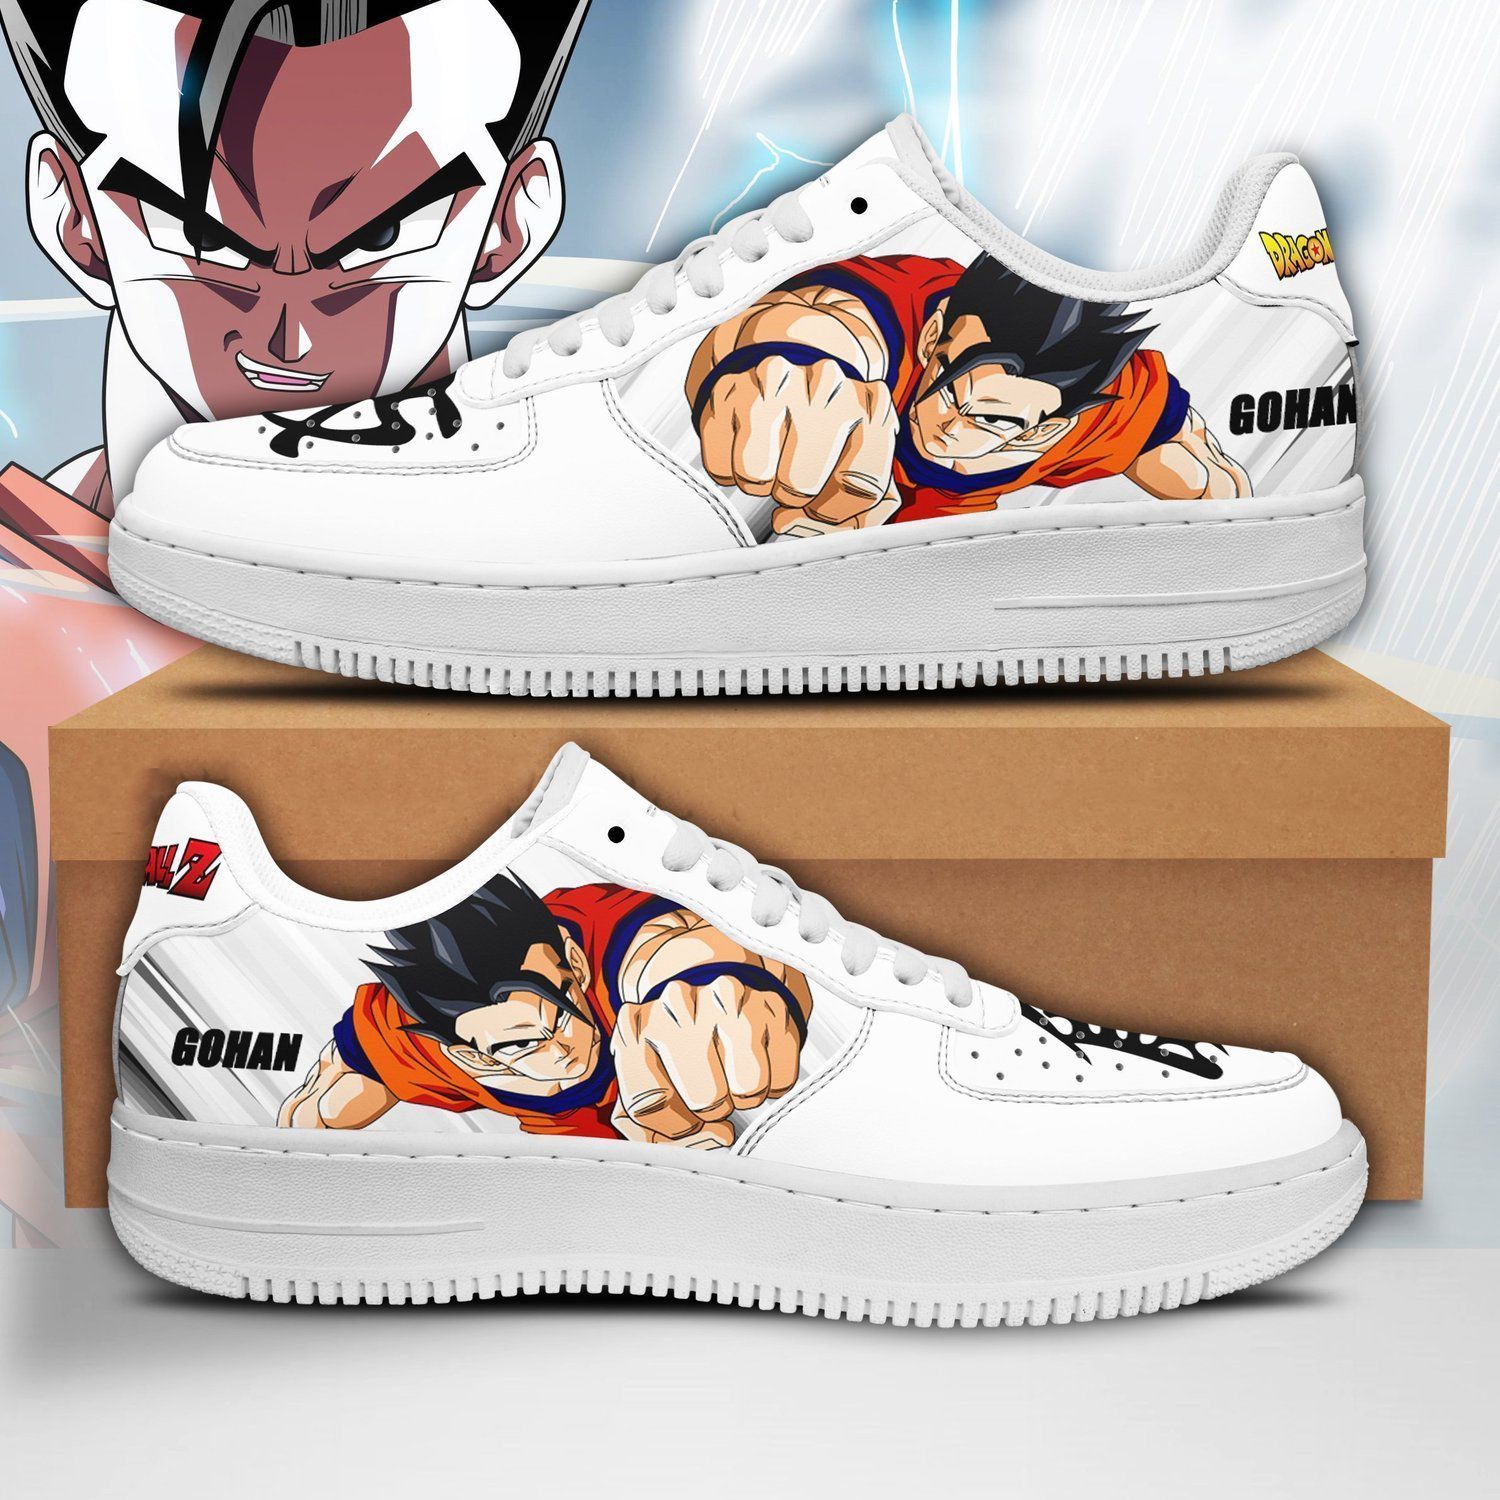 Gohan Dragon Ball Z Air Force 1 Sneaker Shoes